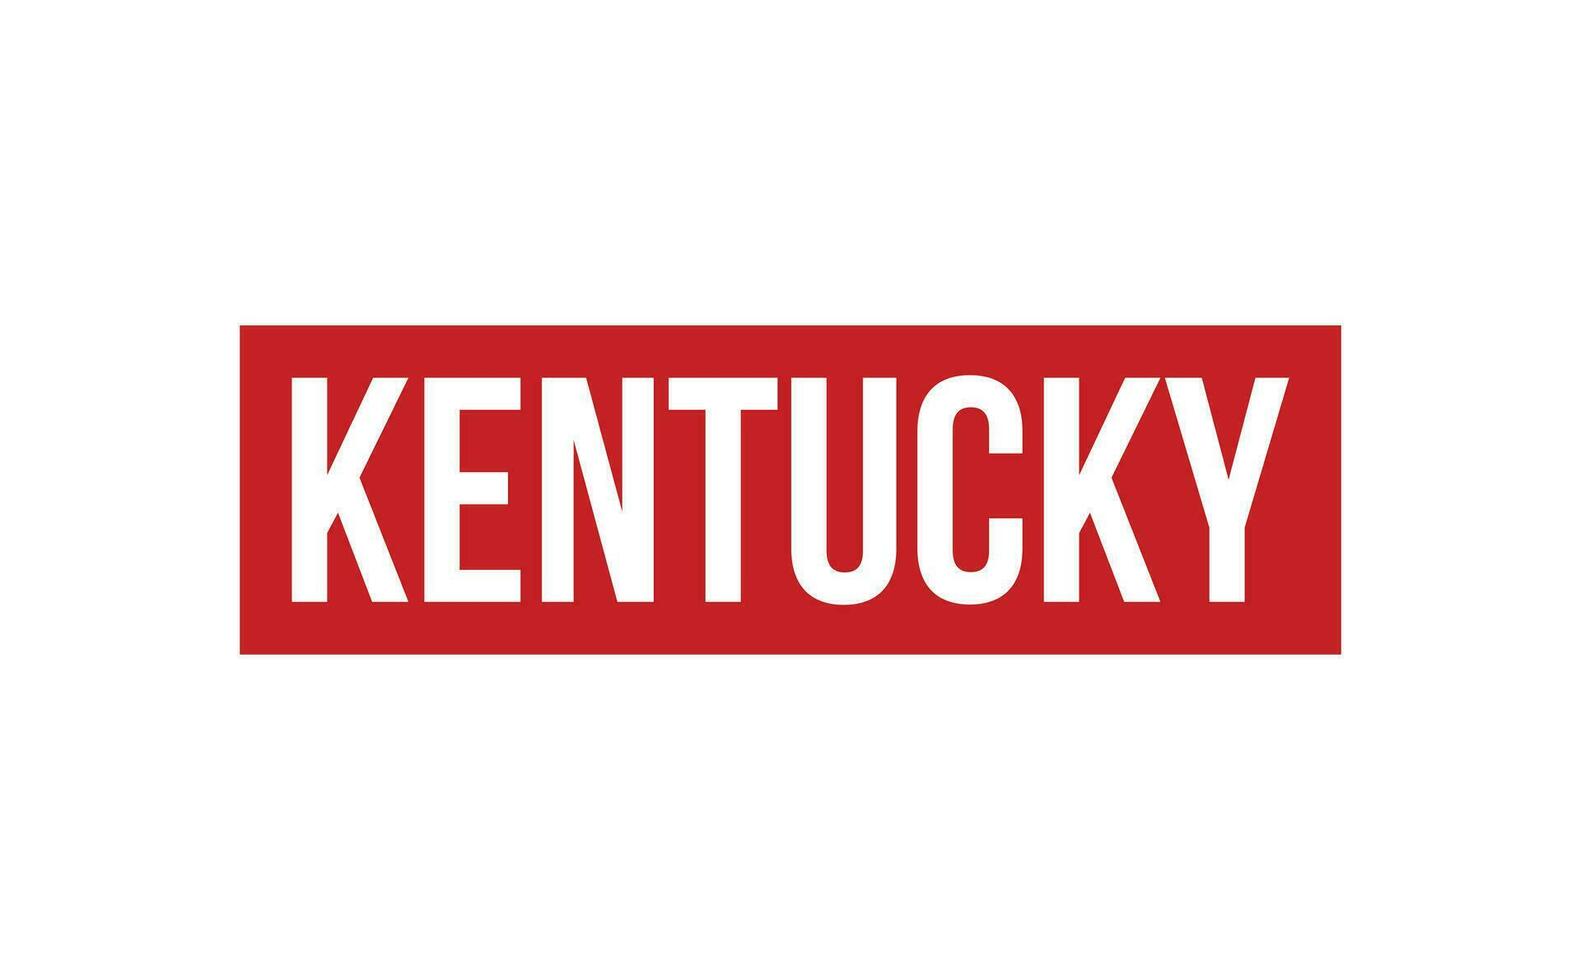 Kentucky gomma da cancellare francobollo foca vettore